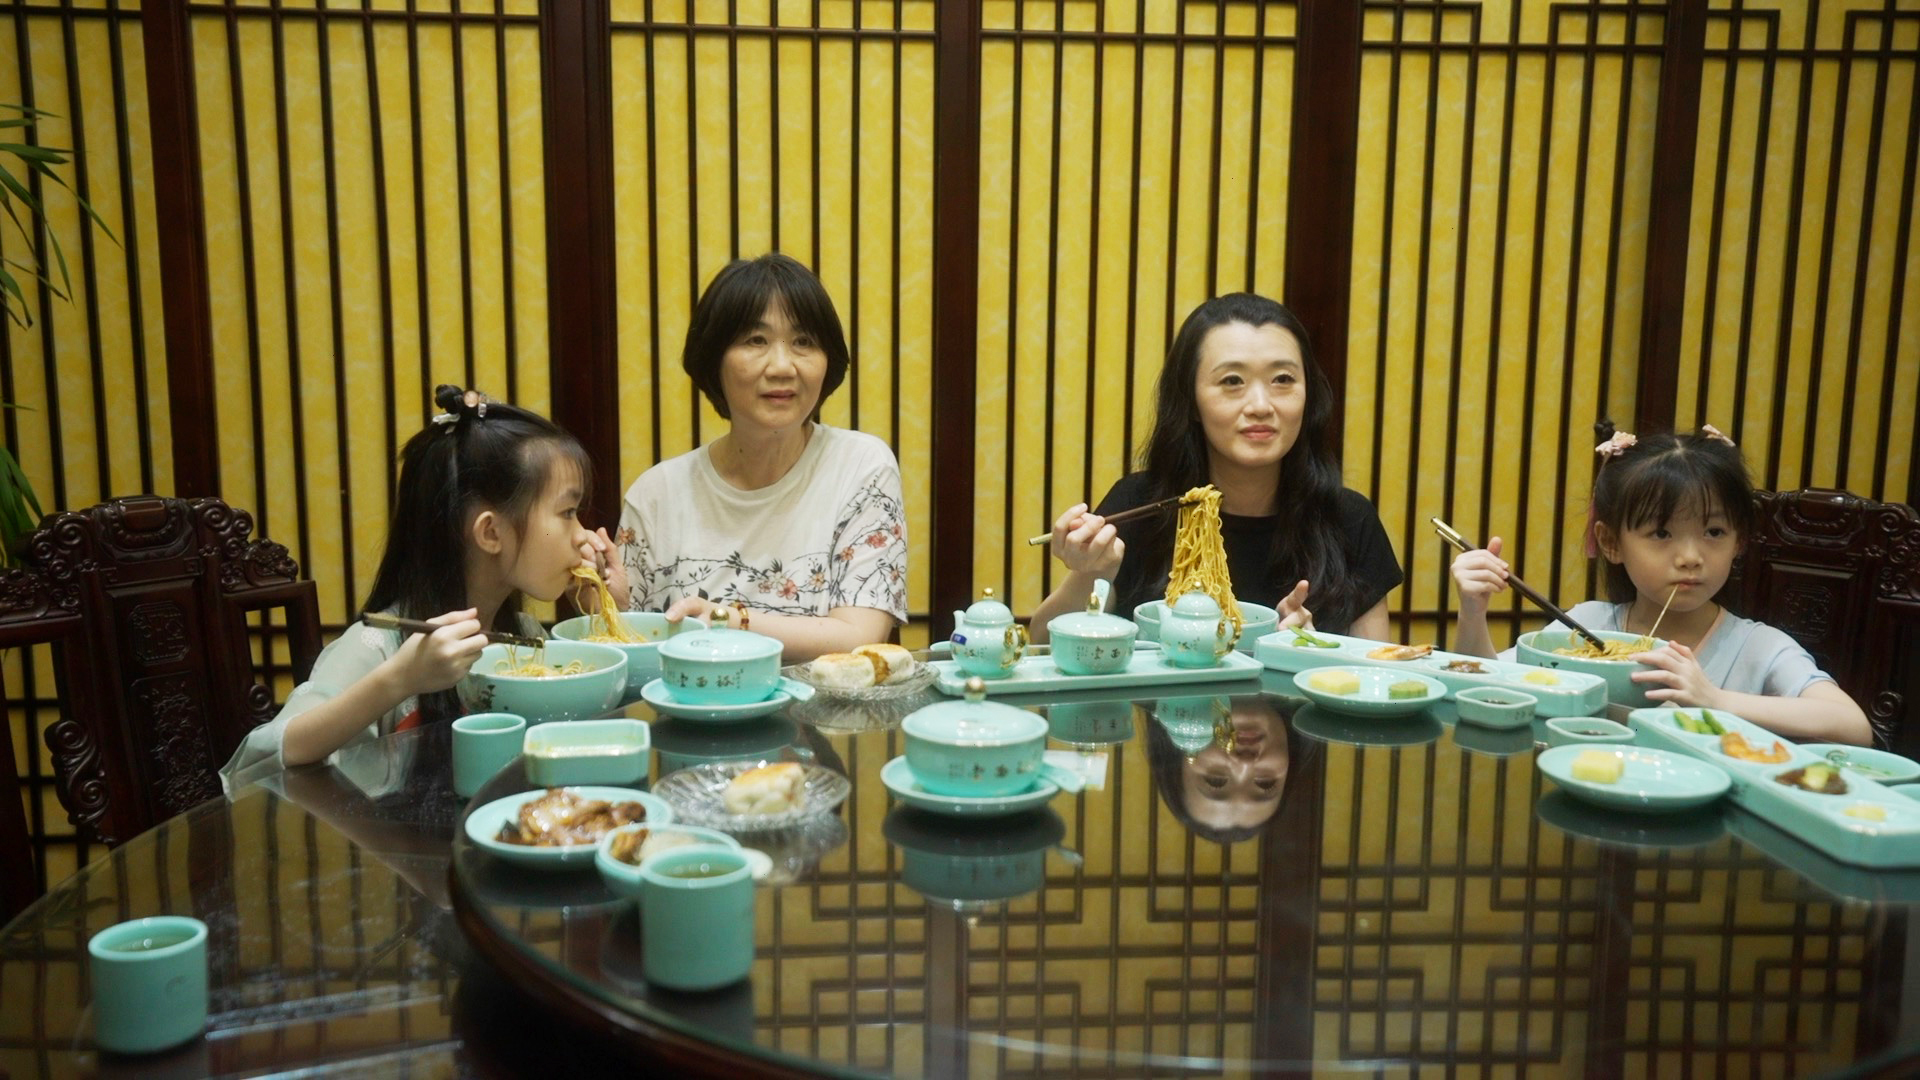 王玉辰（右二）、母亲谢秋蓉和两个女儿在中国江苏省苏州市的一家餐馆吃苏式面条。  /中国环球电视网